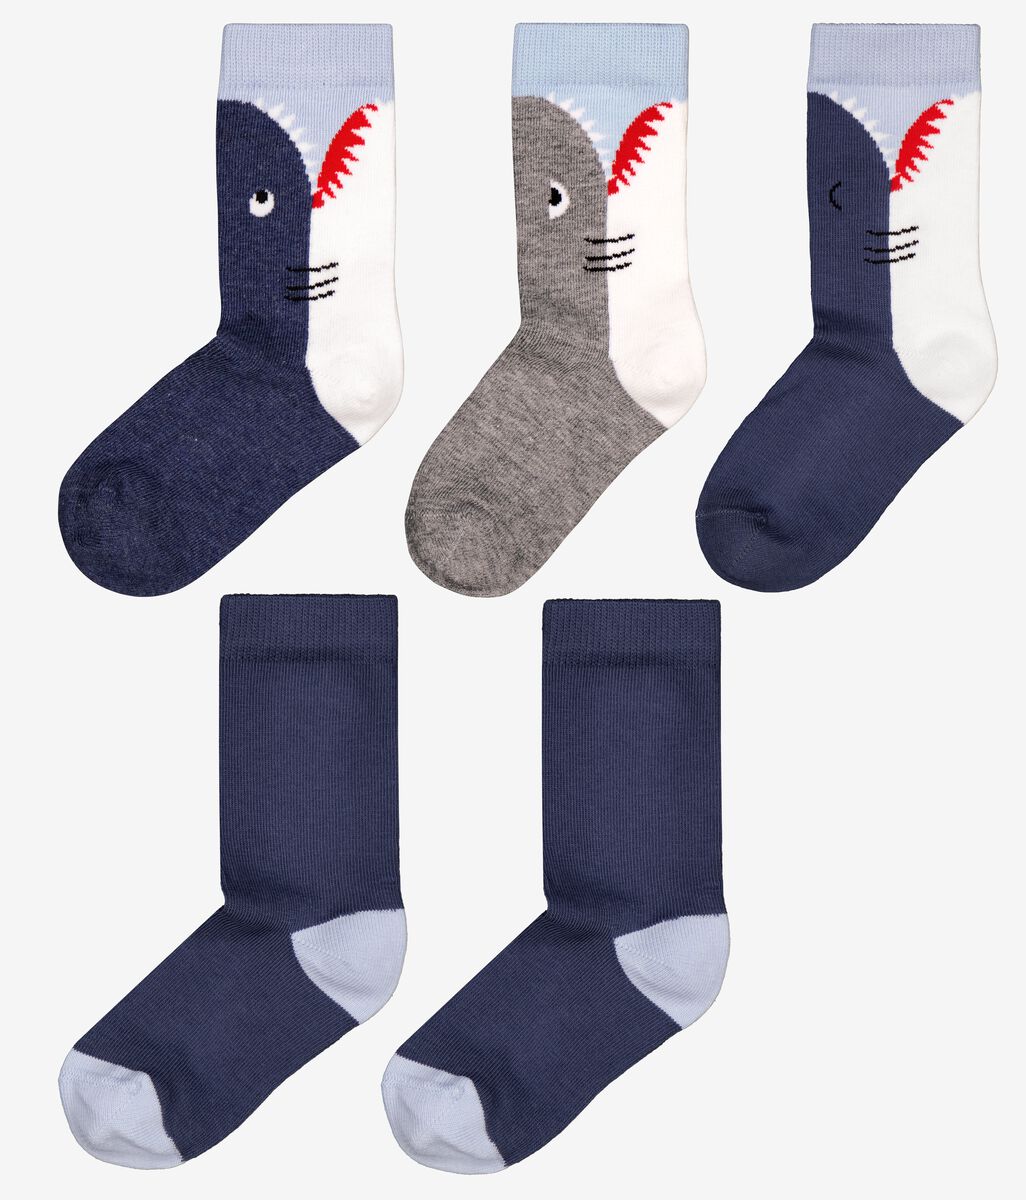 5 paires de chaussettes enfant requins bleu - 1000026519 - HEMA